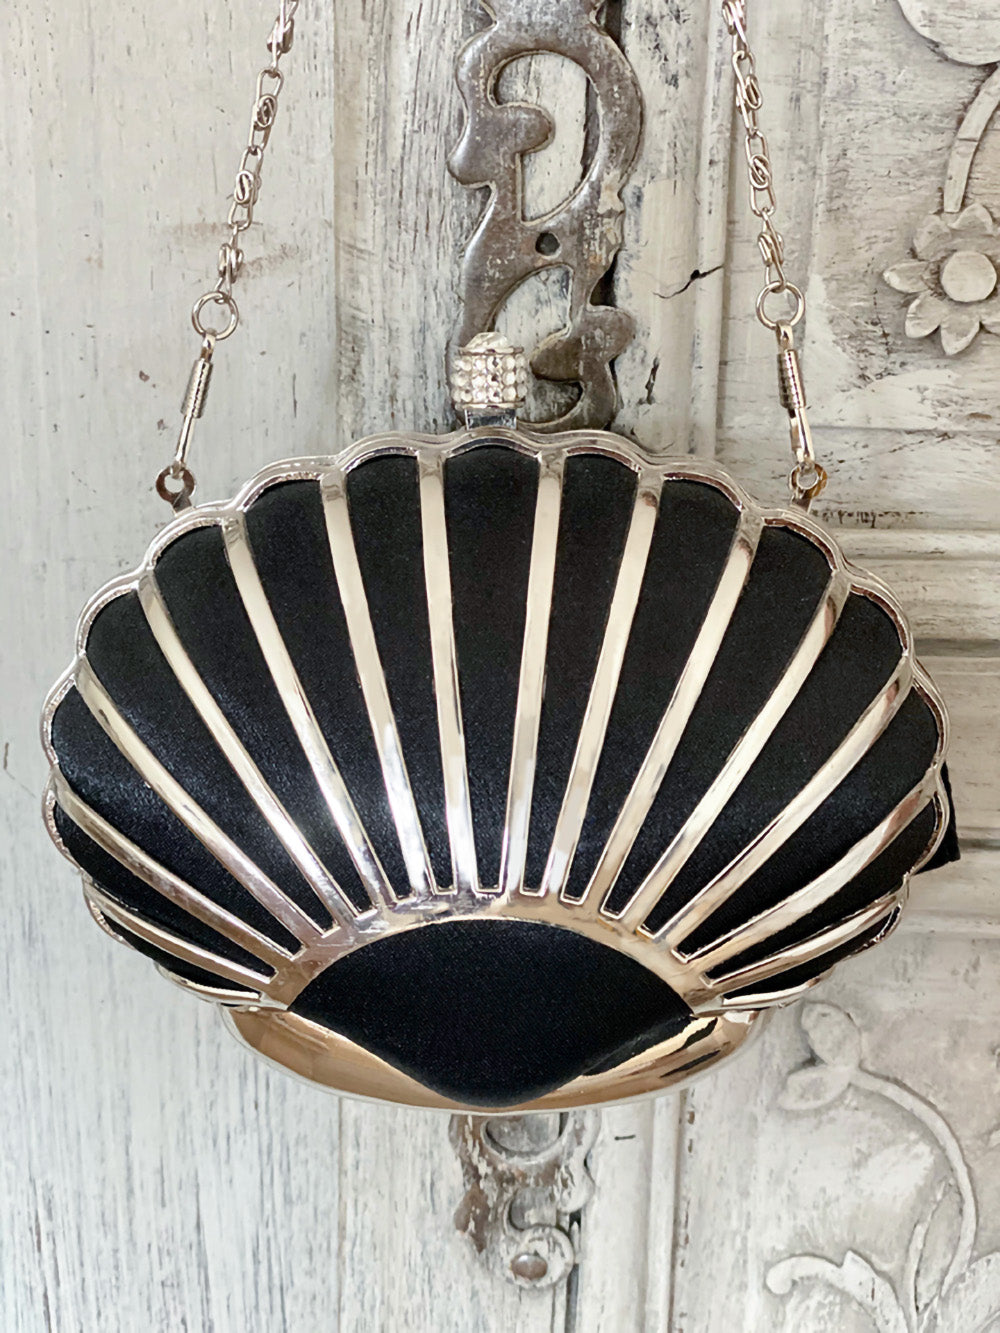 Venus clam shell clutch in black satin